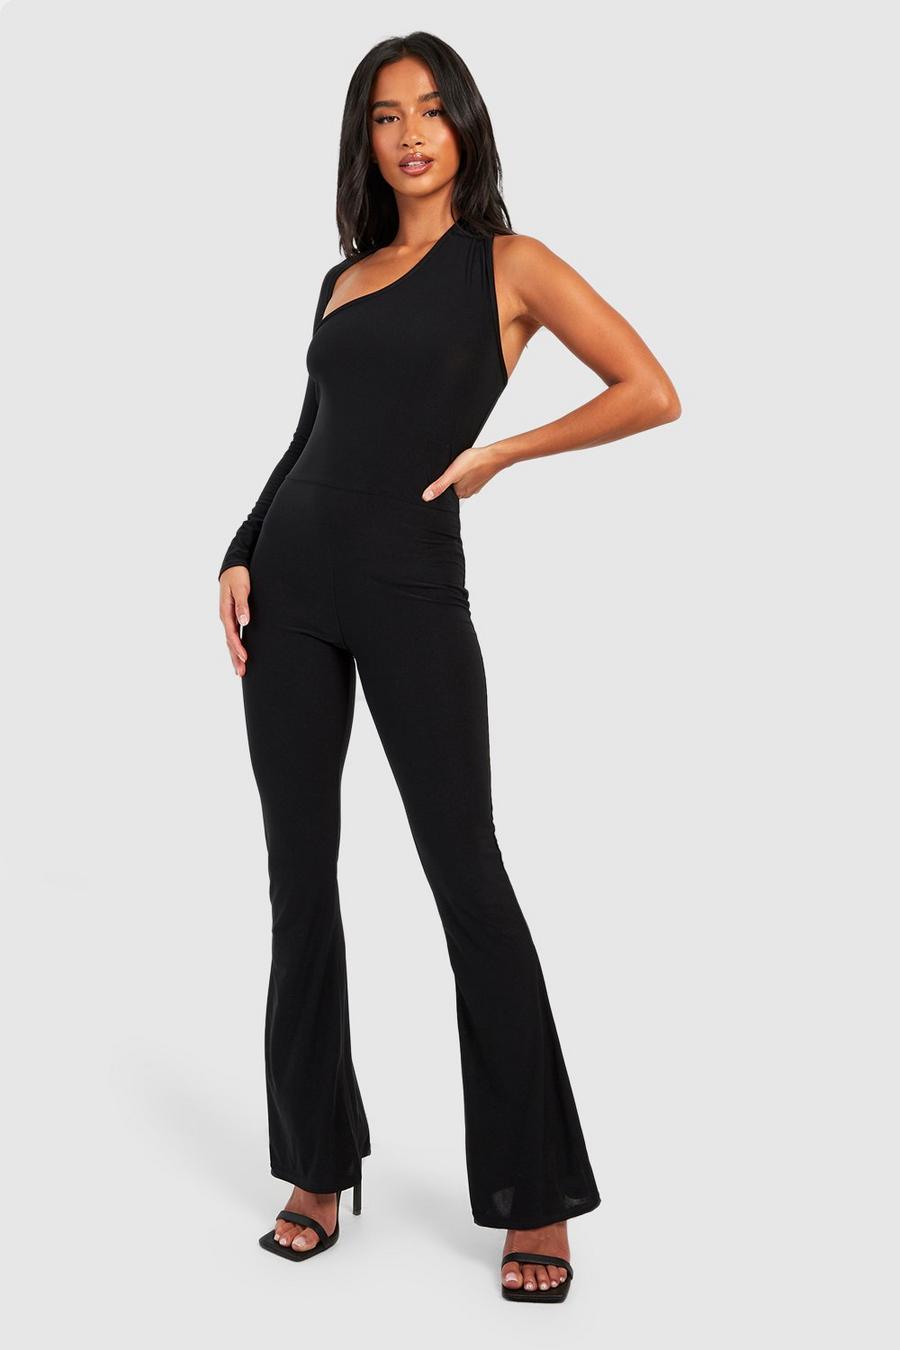 Black Petite Premium Soft Slinky One Sleeve Jumpsuit